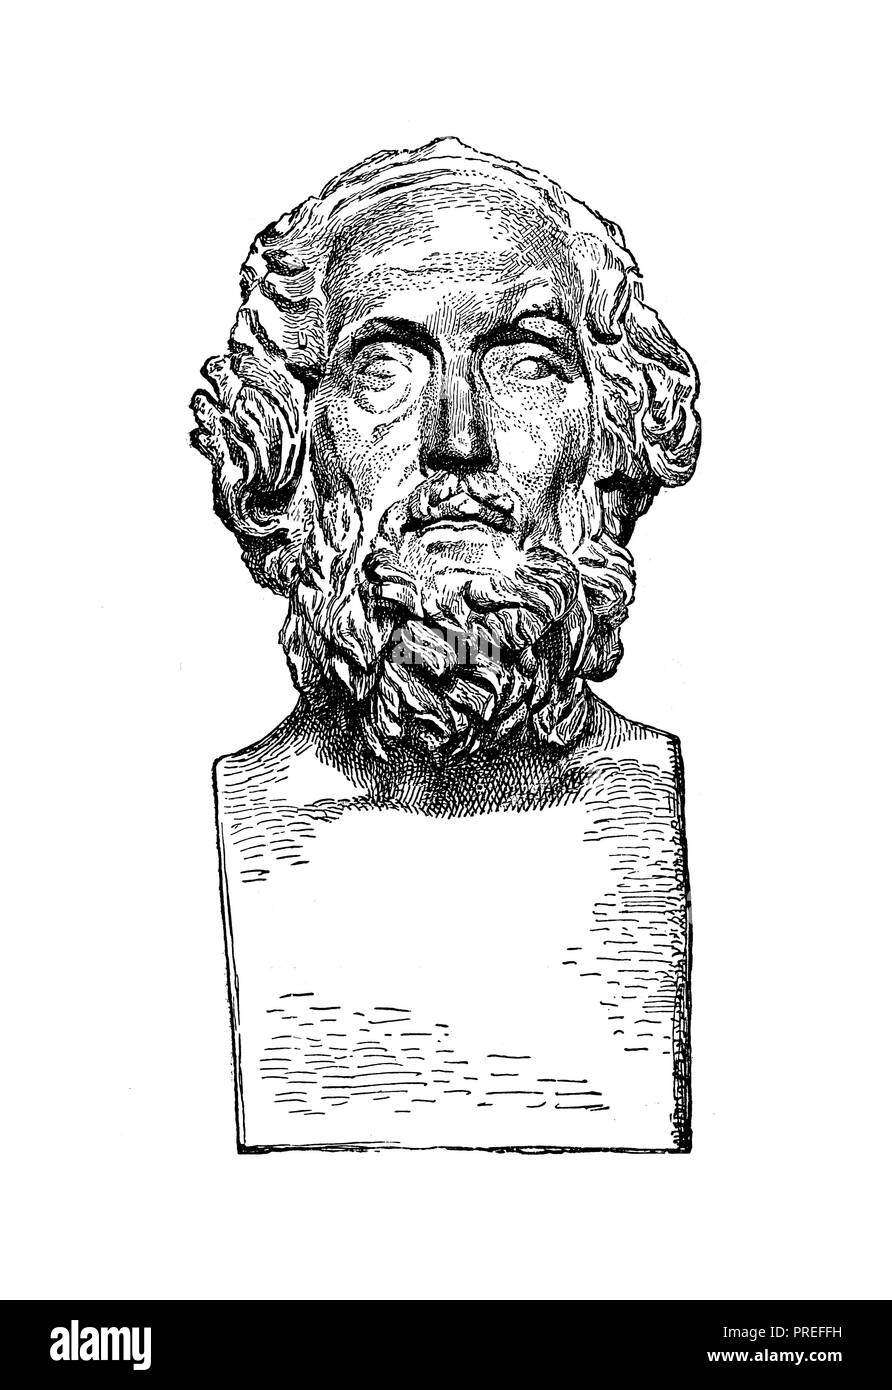 Illustrazione originale di Omero, l'autore dell'Iliade e l'Odissea. Pubblicato in una storia pittorica del mondo grandi nazioni: fin dai primi d Foto Stock